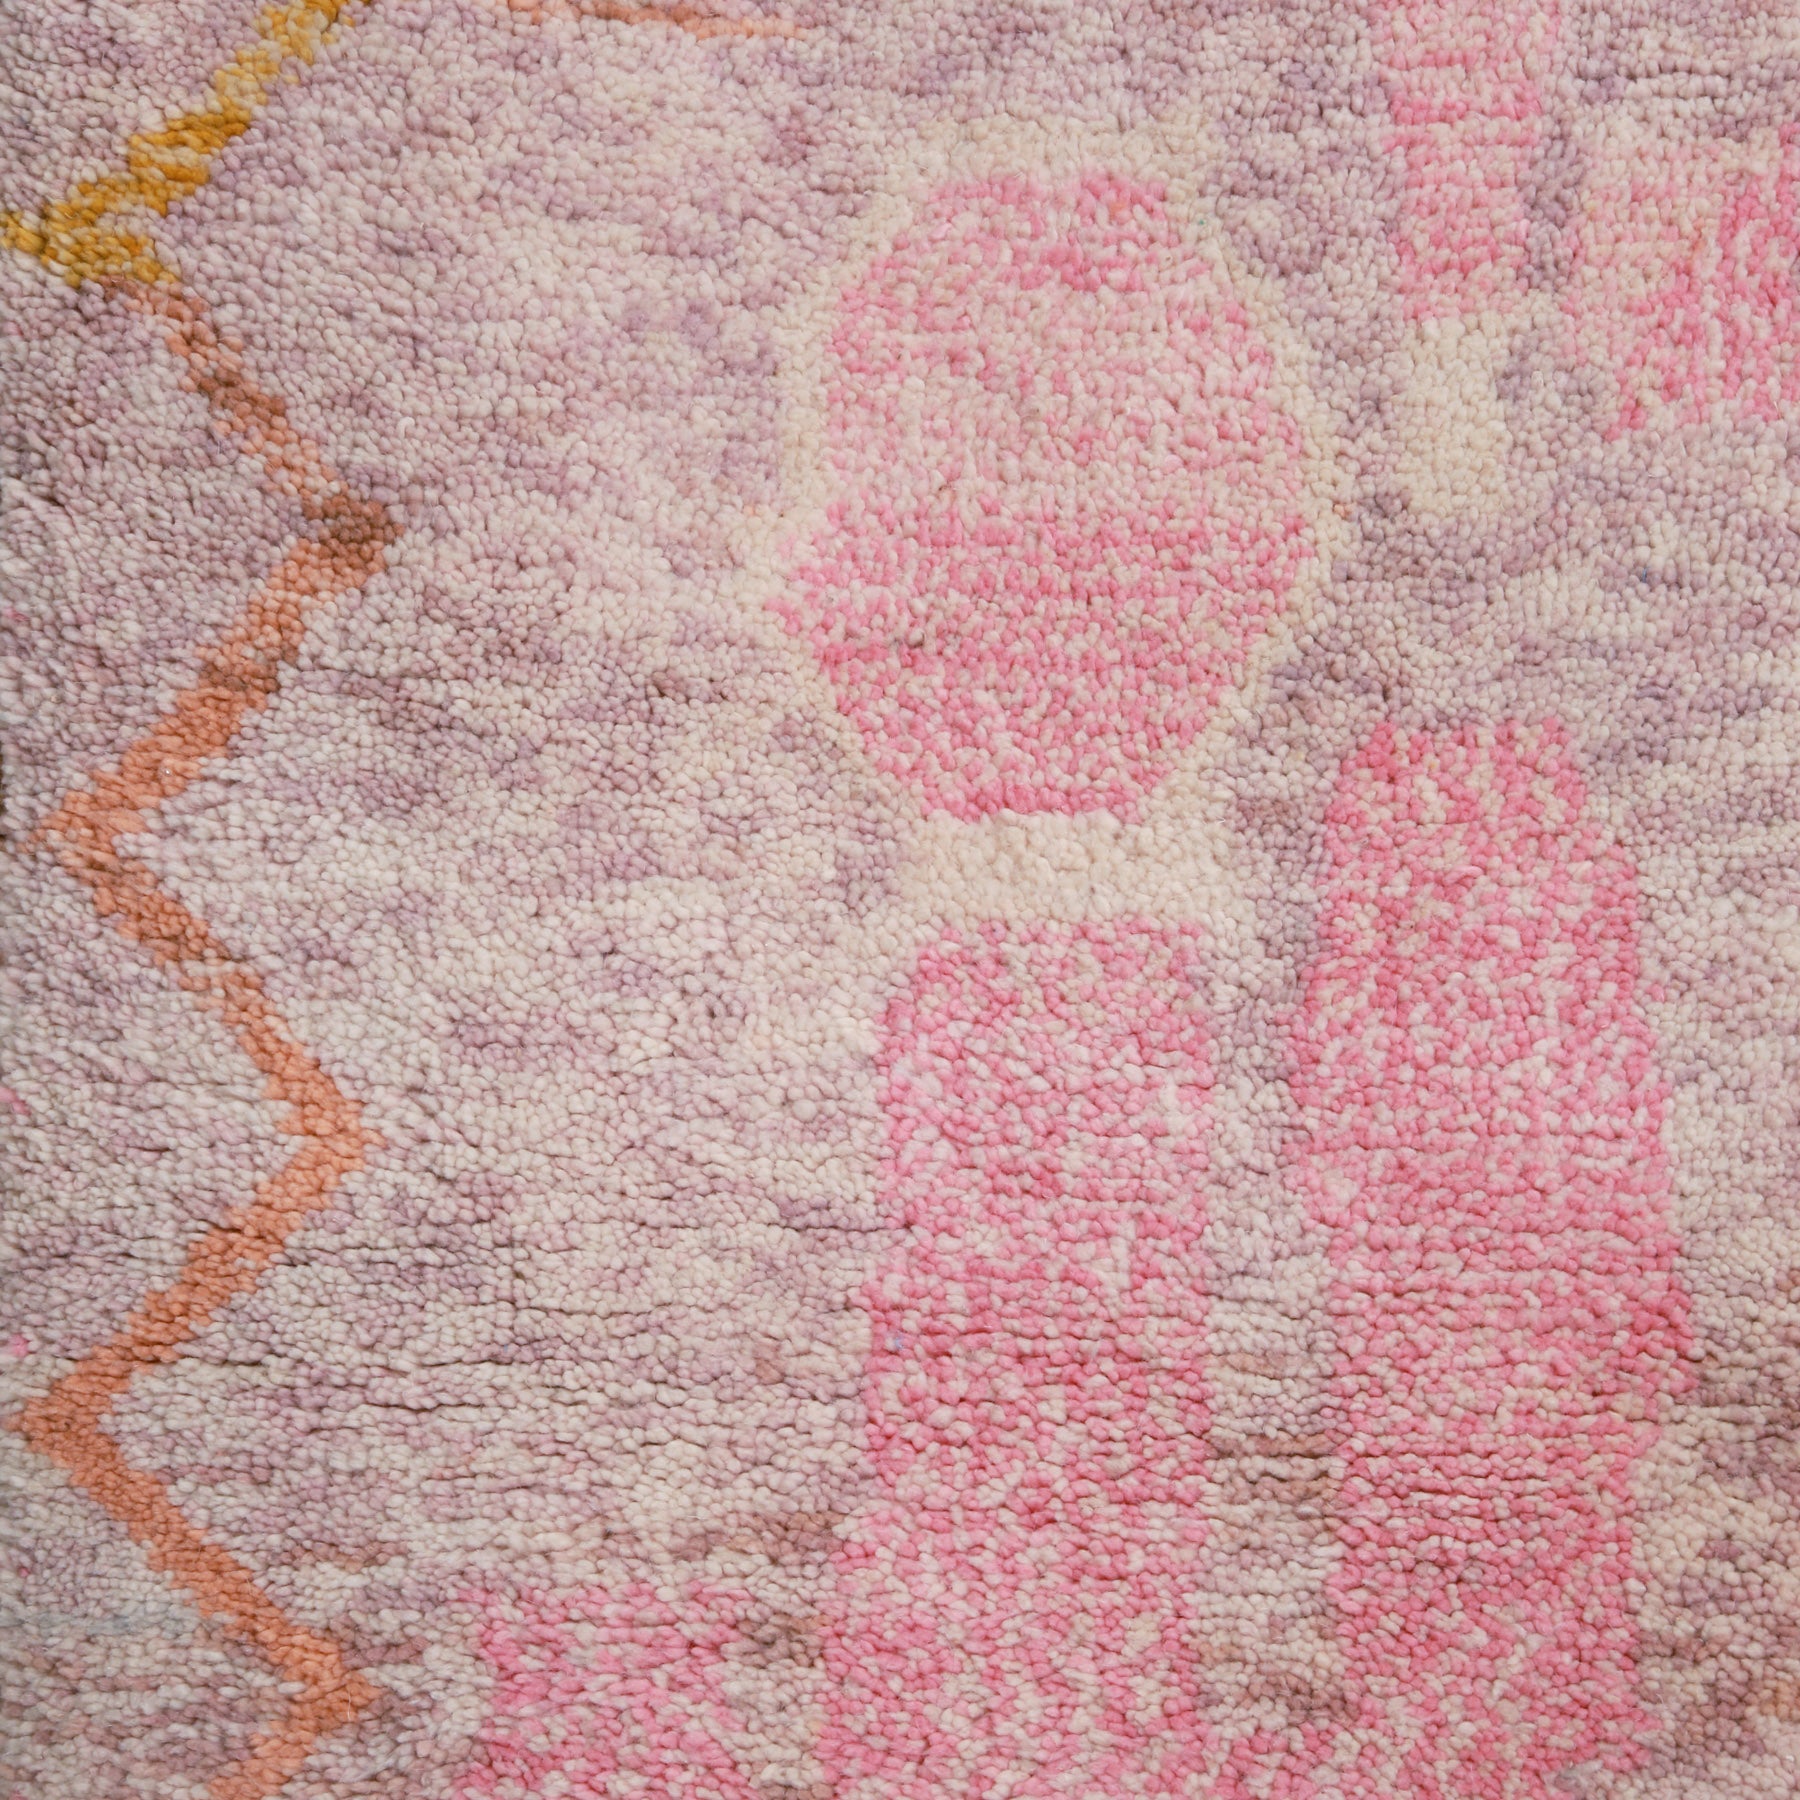 dettaglio de disegno astratto con sfumature di rosa su base lilla di un tappeto beni ourain